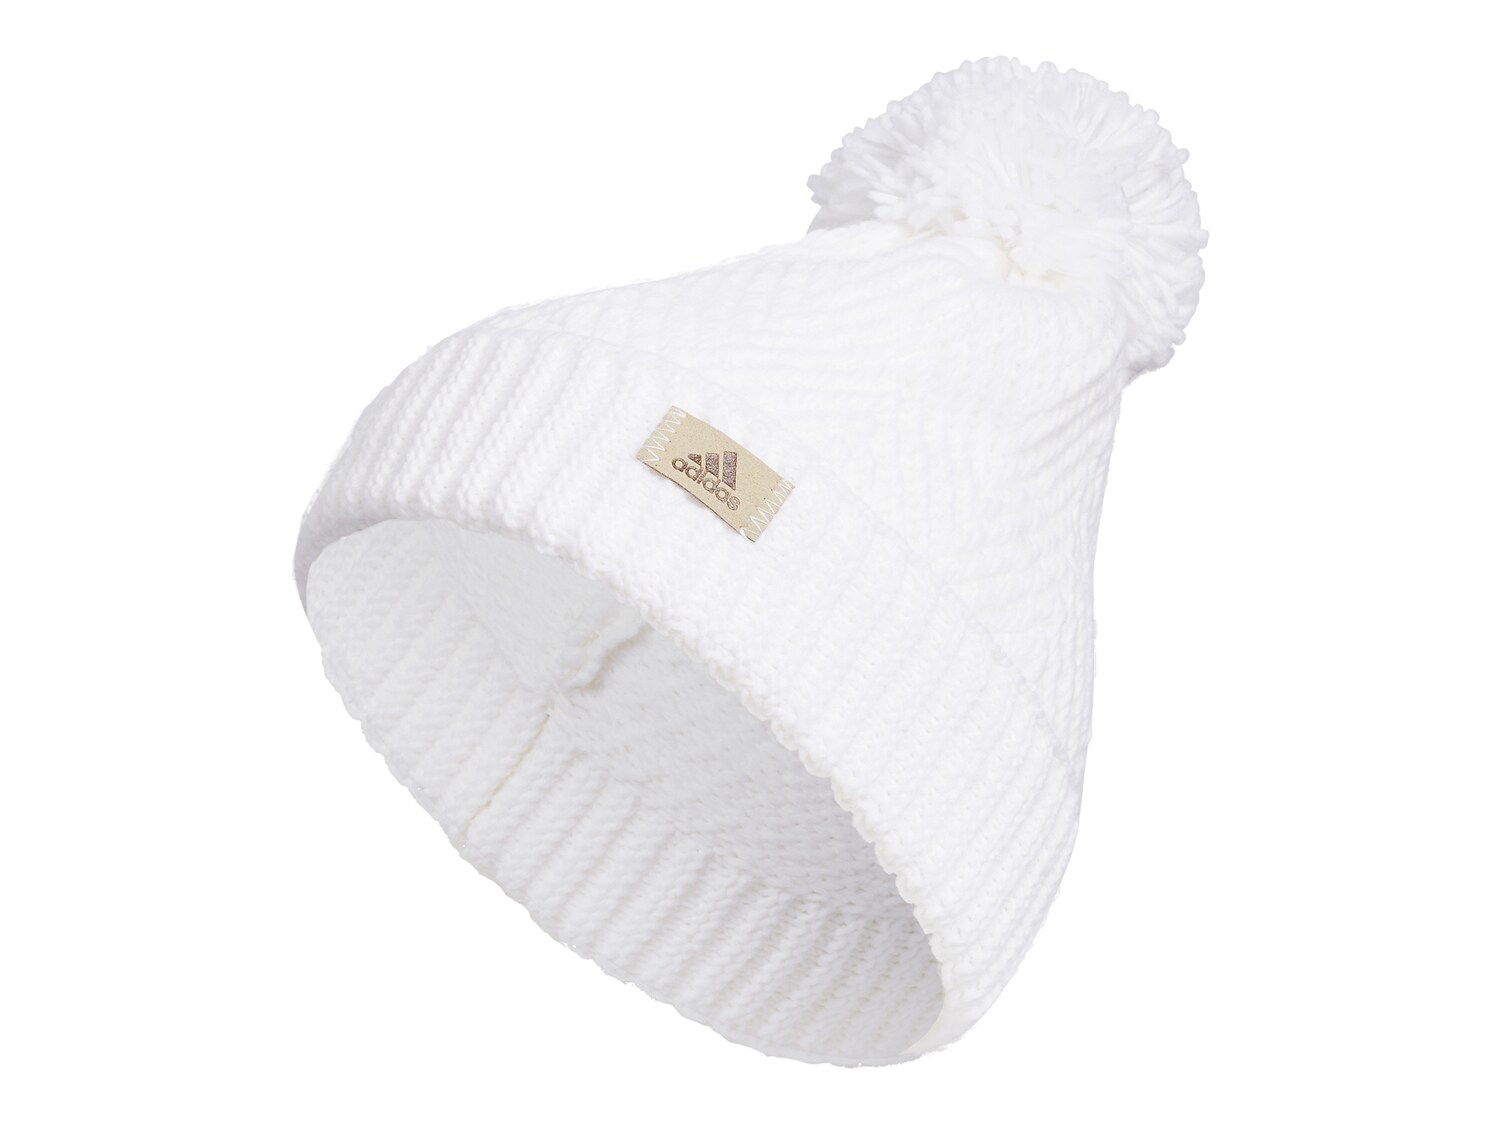 Шапка-бини Adidas, белый детские шапки с помпоном из натурального меха енота вязаная шапка детские теплые зимние шапки для женщин вязаные облегающие шапки шапки